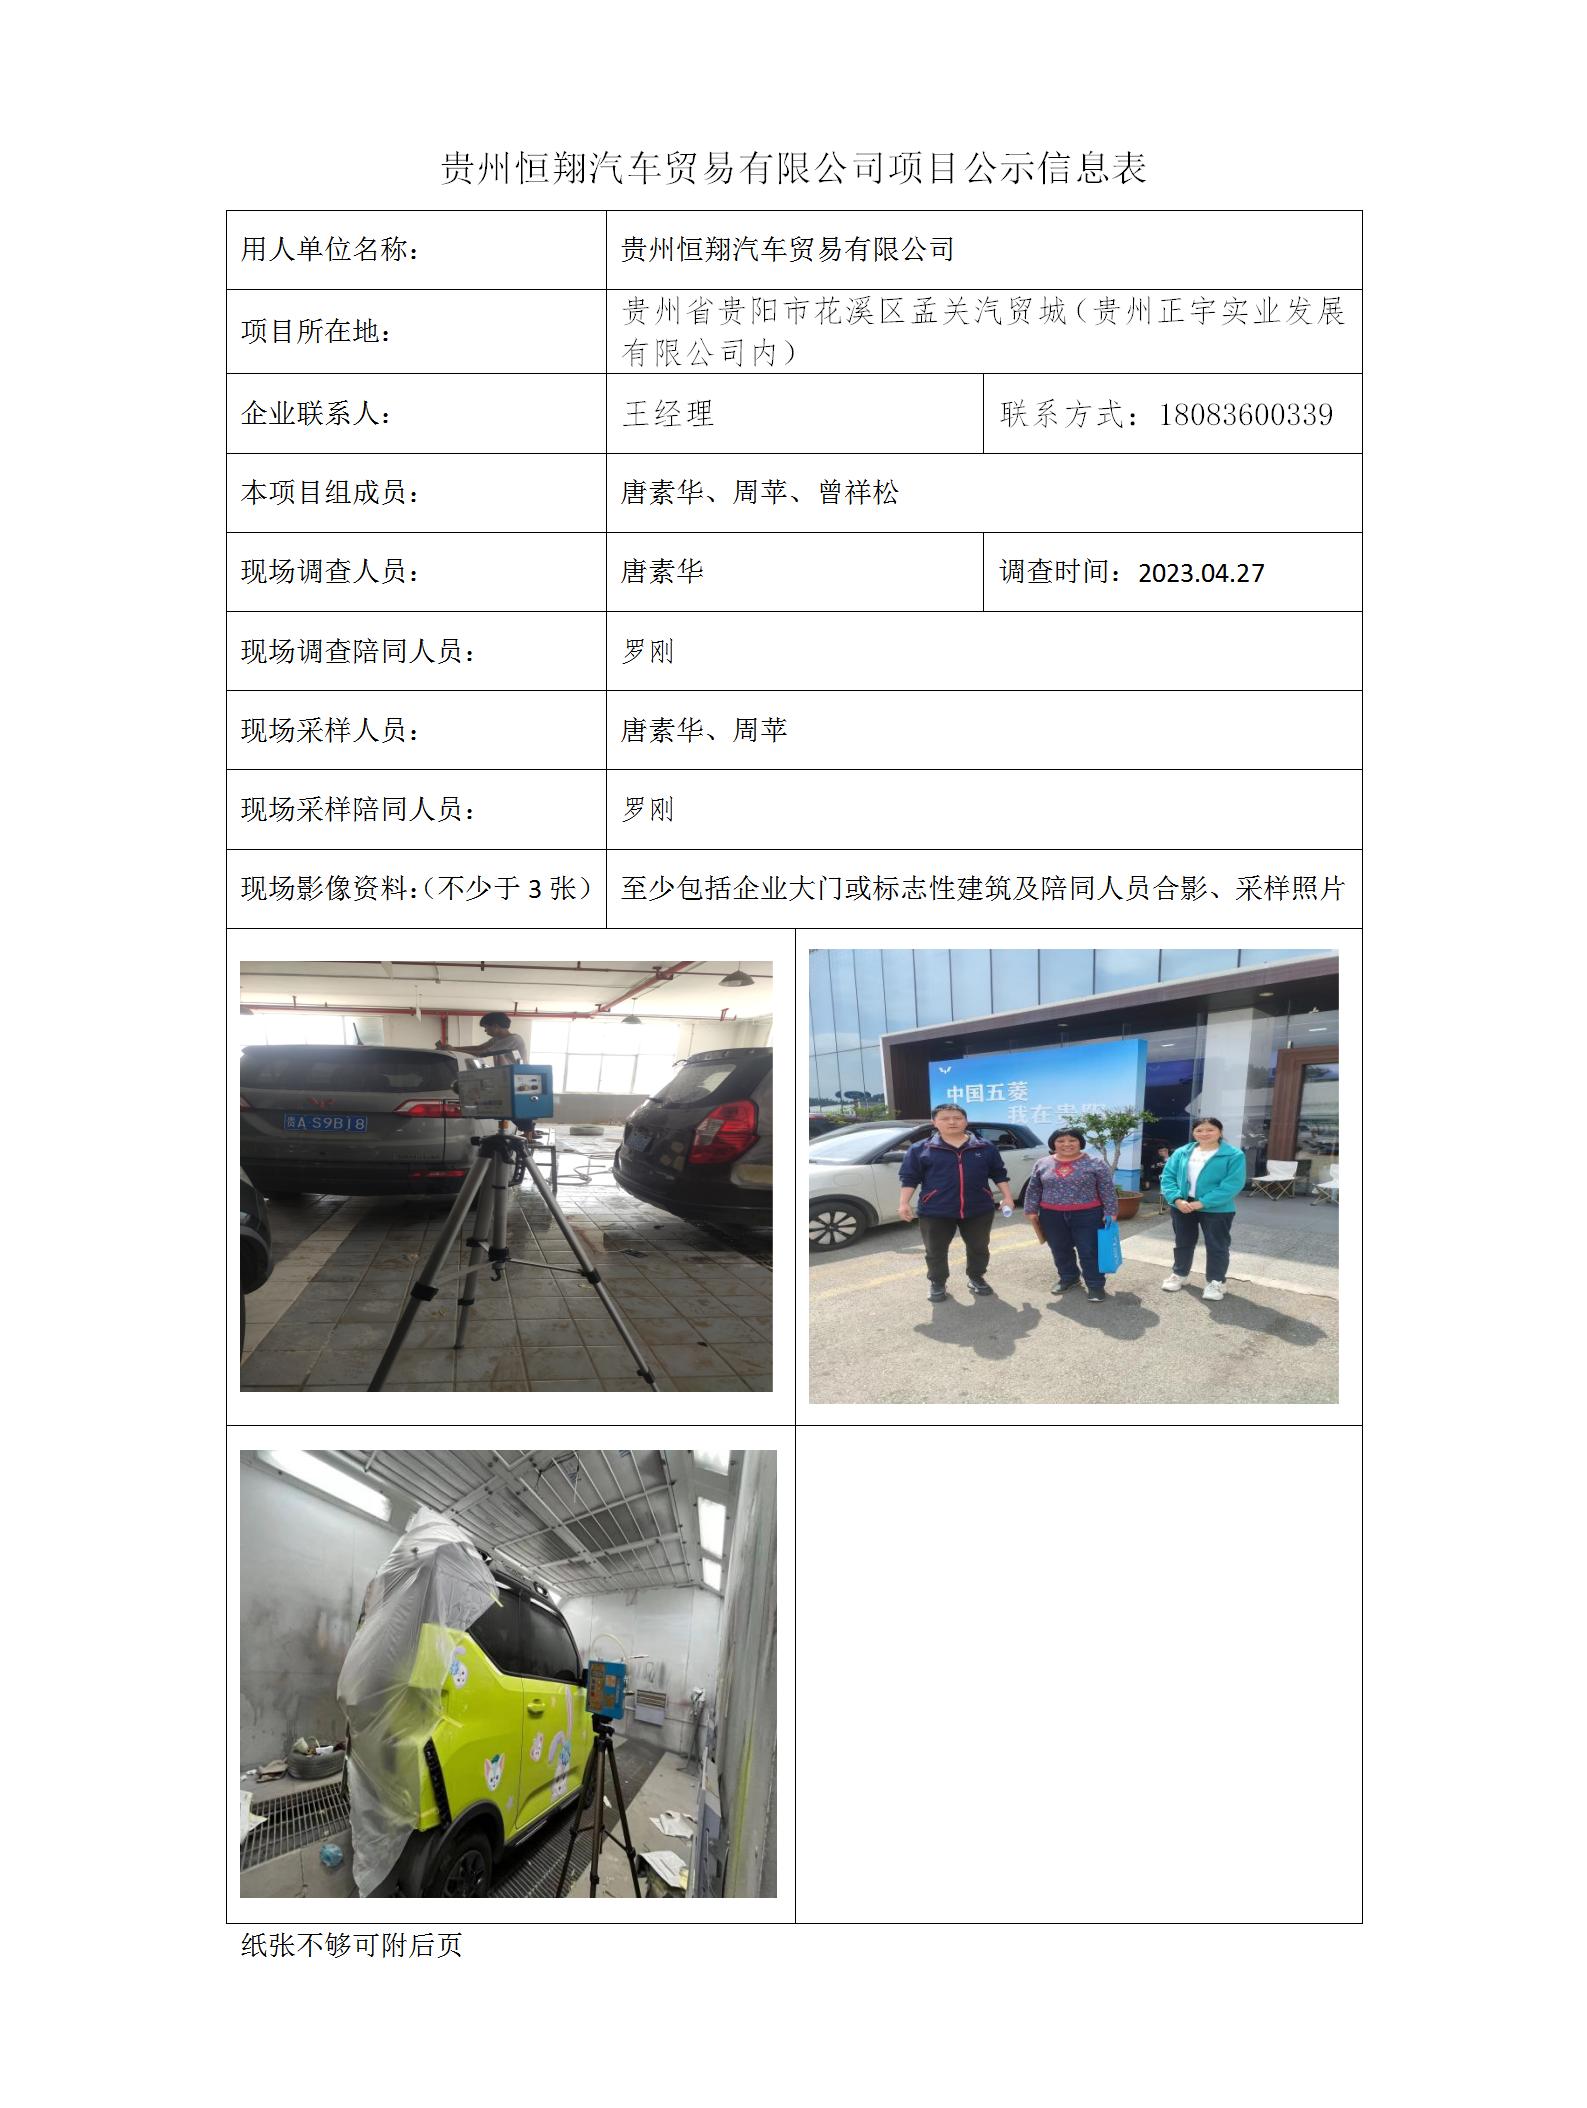 贵州恒翔汽车贸易有限公司项目公示信息表_01.jpg